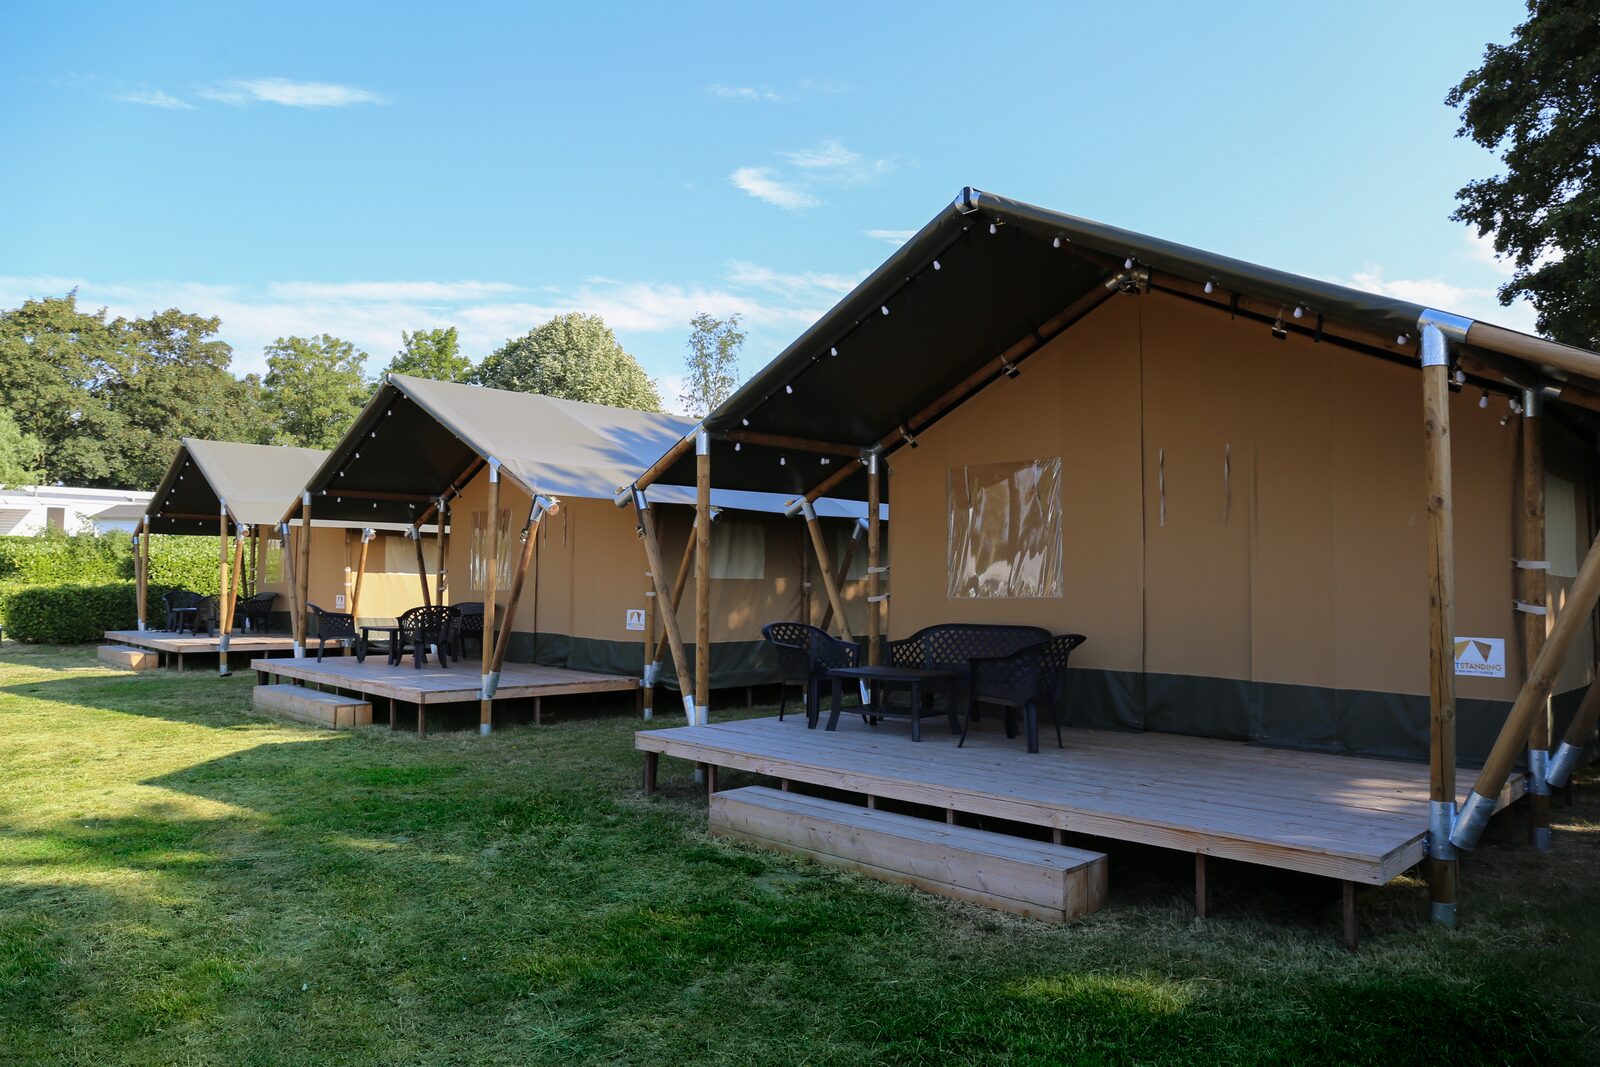 Safari tent